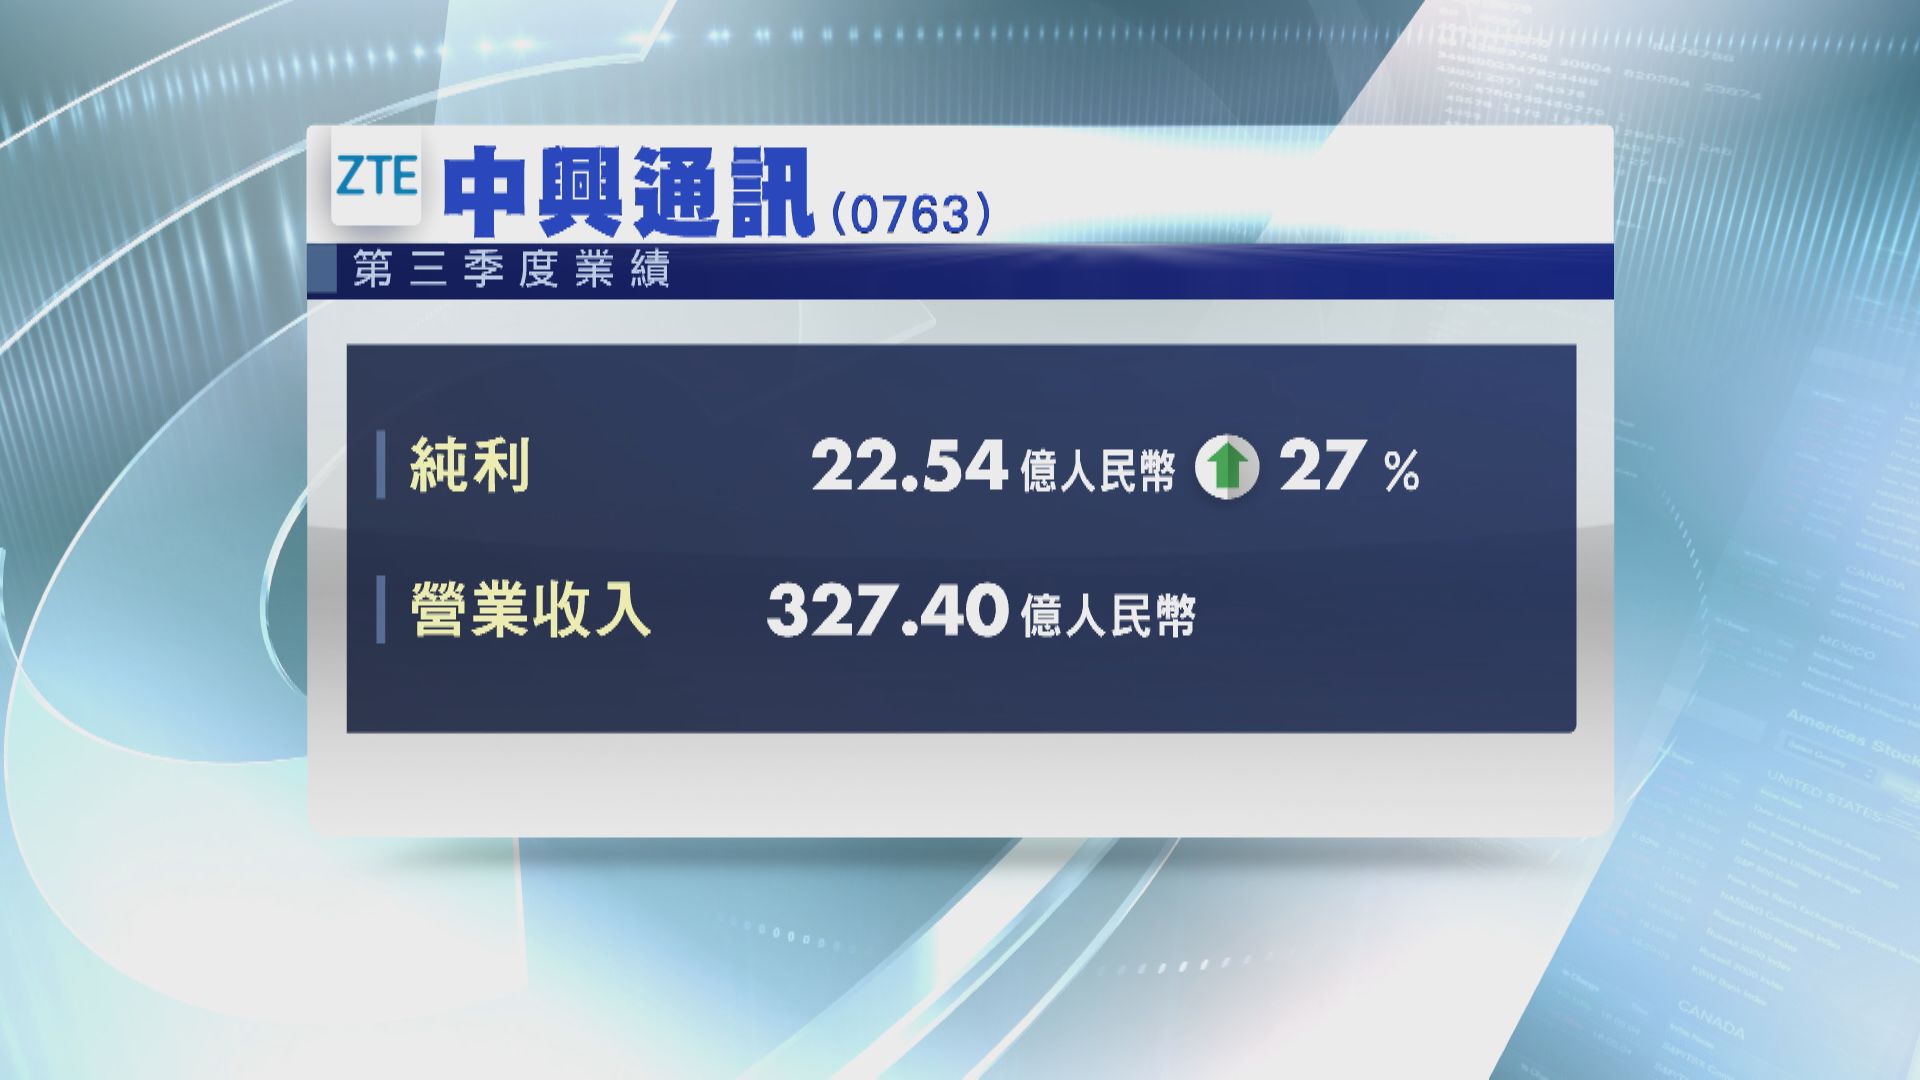 【業績速報】中興第3季多賺27% 勝預期